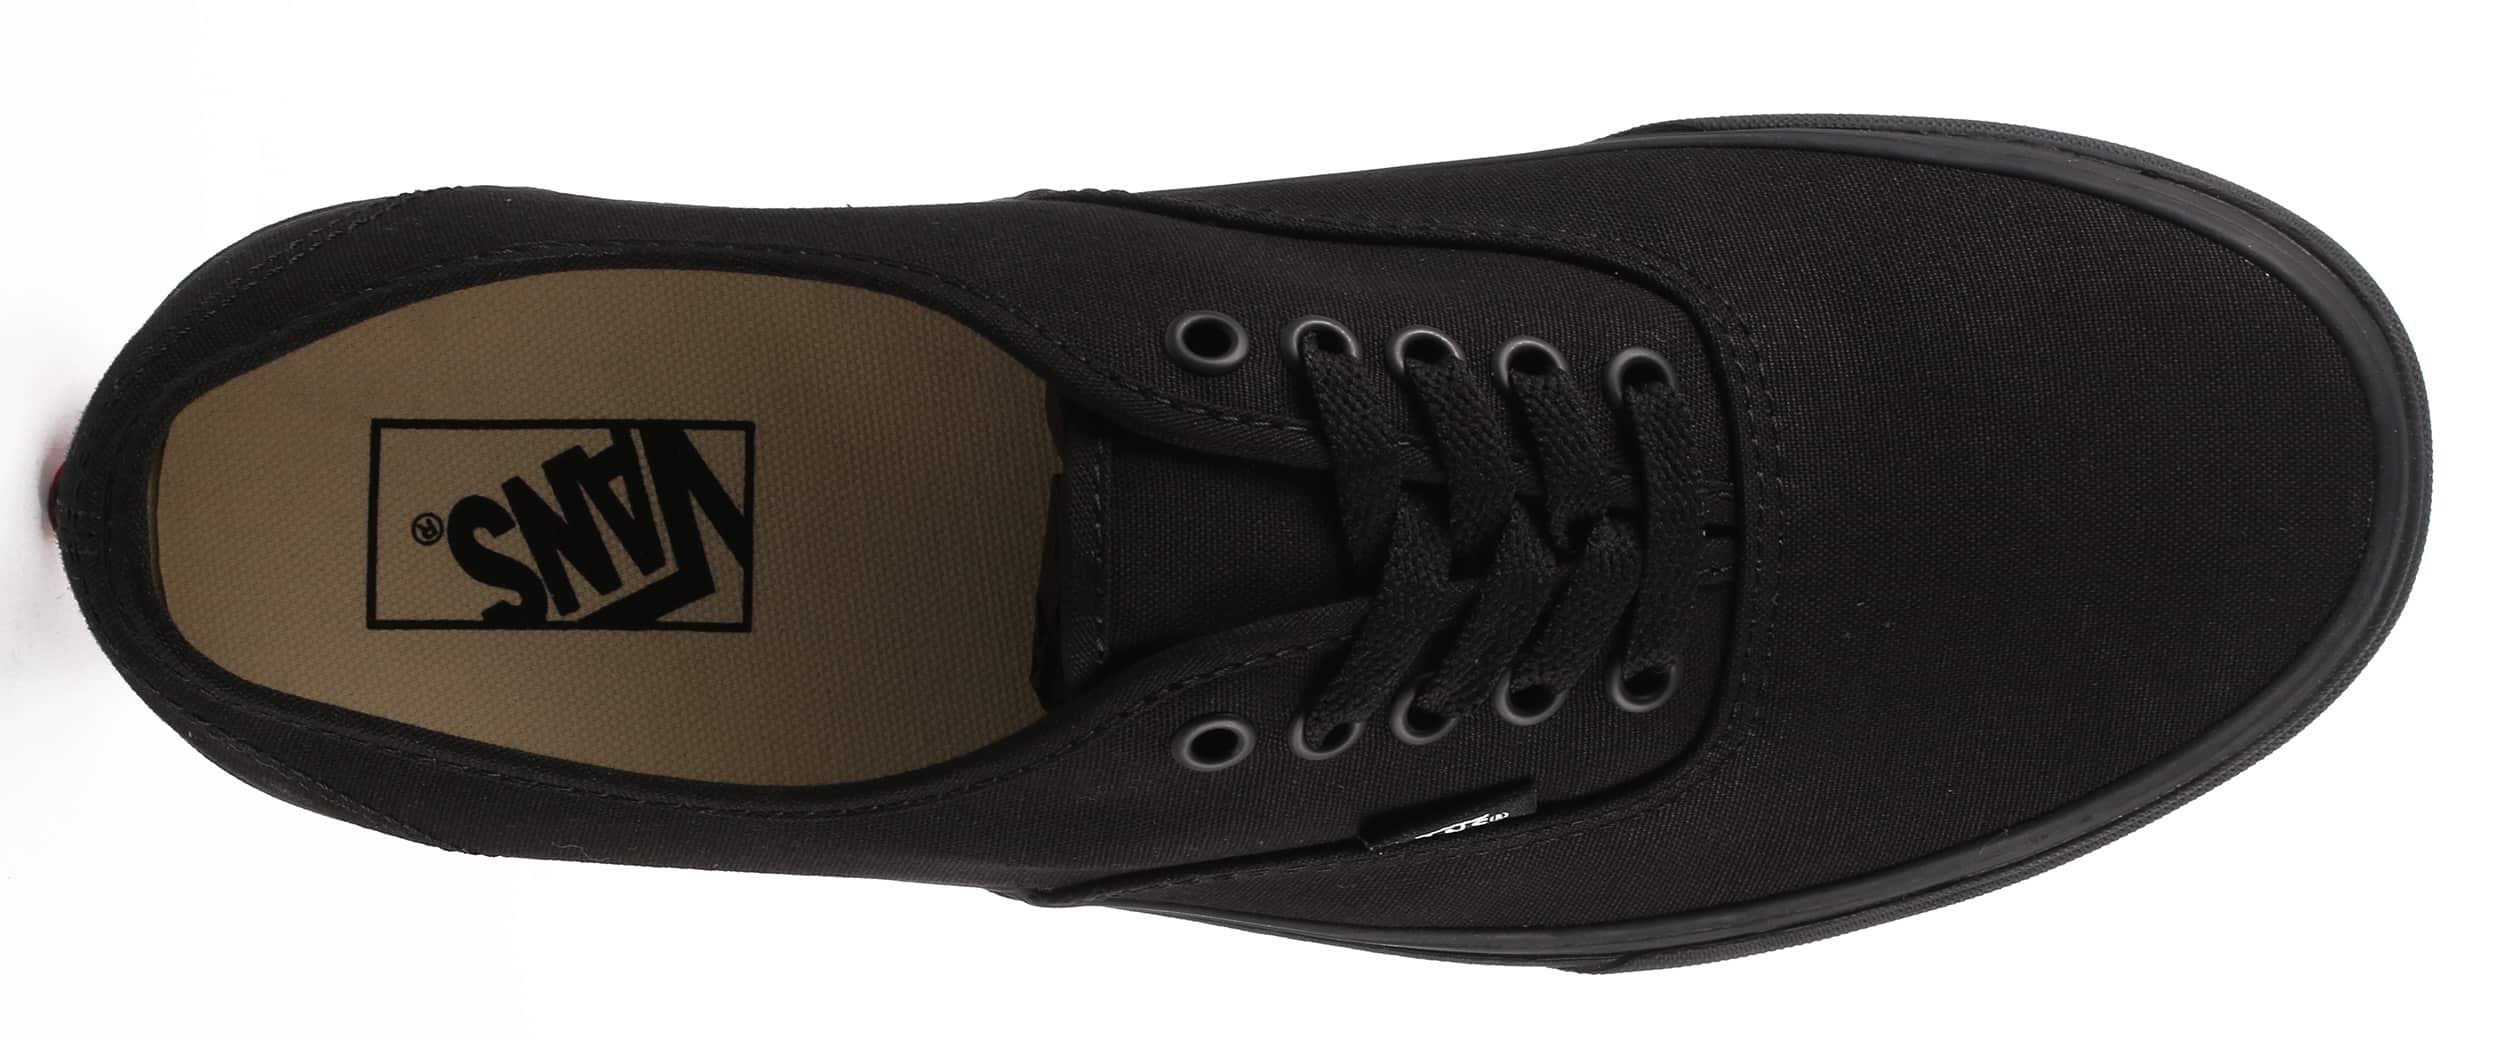 Vans Authentic Skate Shoes - black/black | Tactics